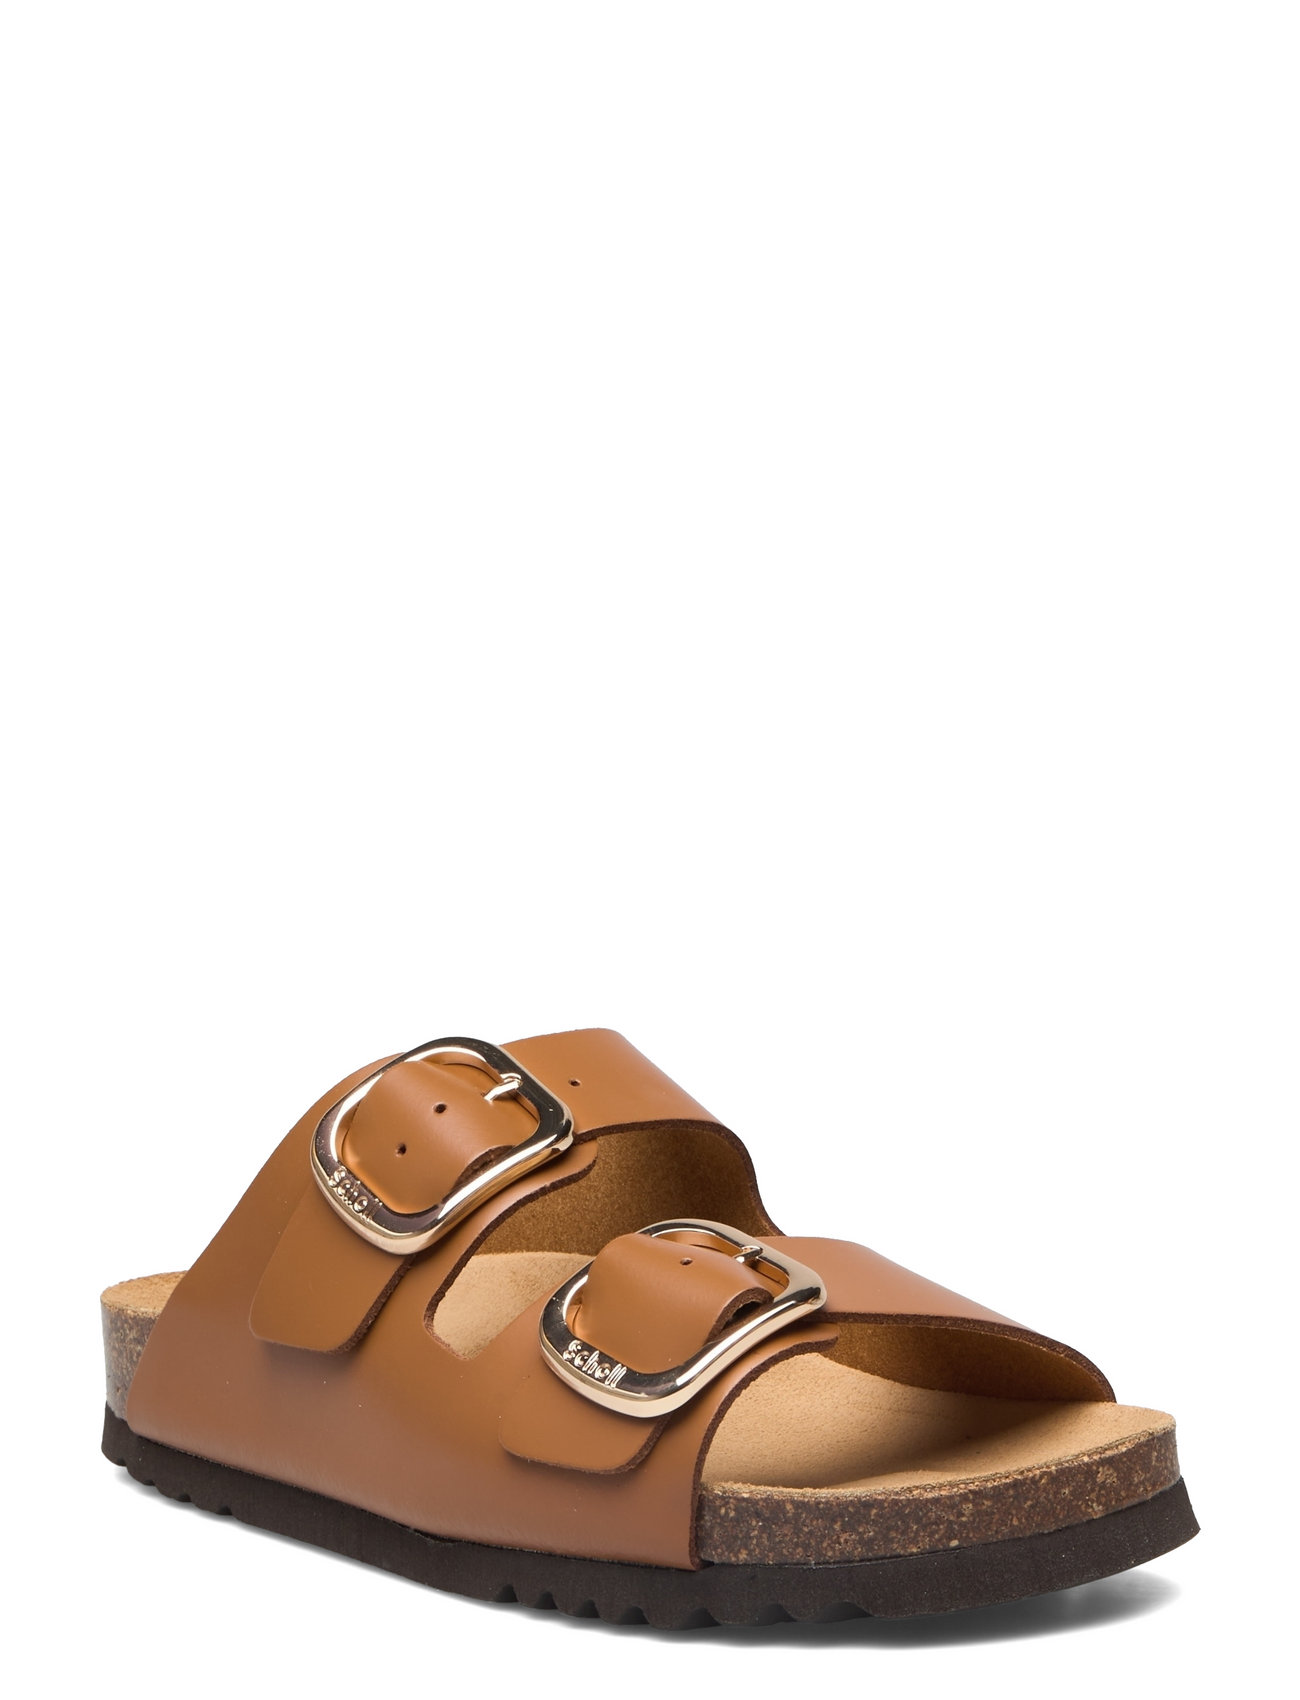 HADYN Cognac Leather Sandal | Women's Designer Sandals – Steve Madden